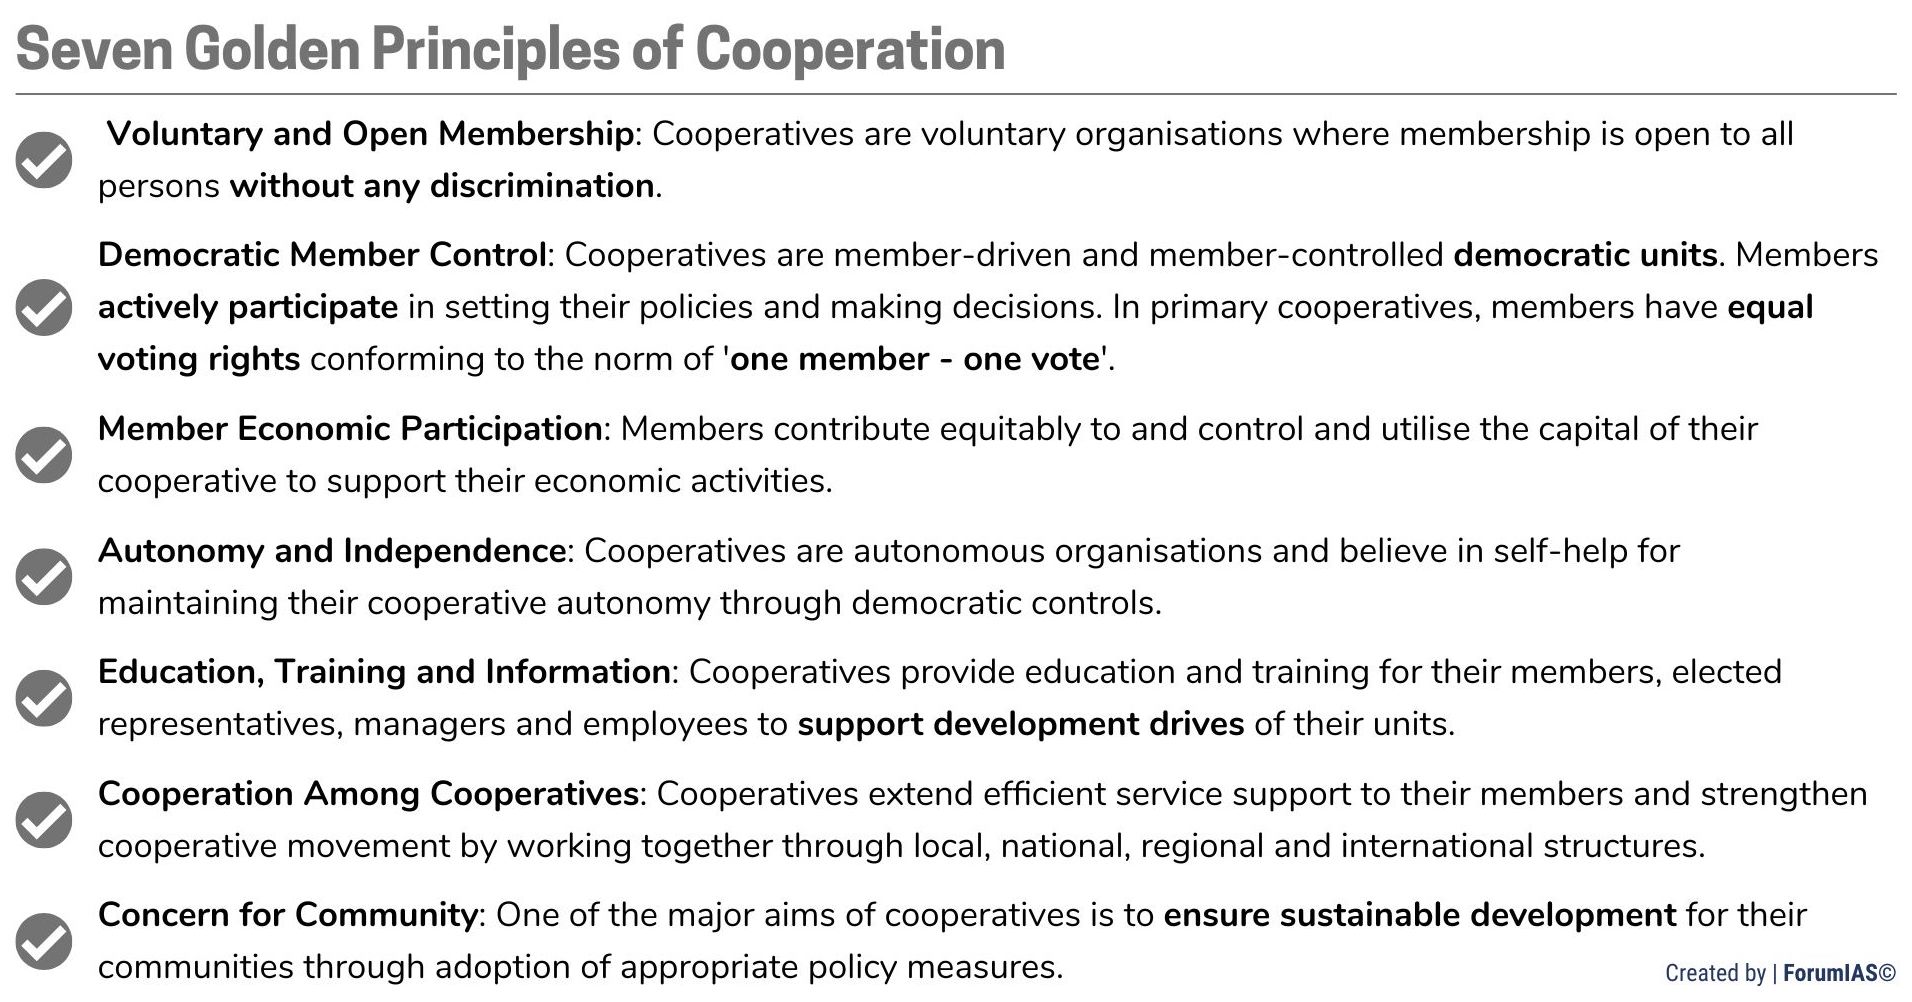 Seven Golden Principles of Cooperatives FPOs UPSC